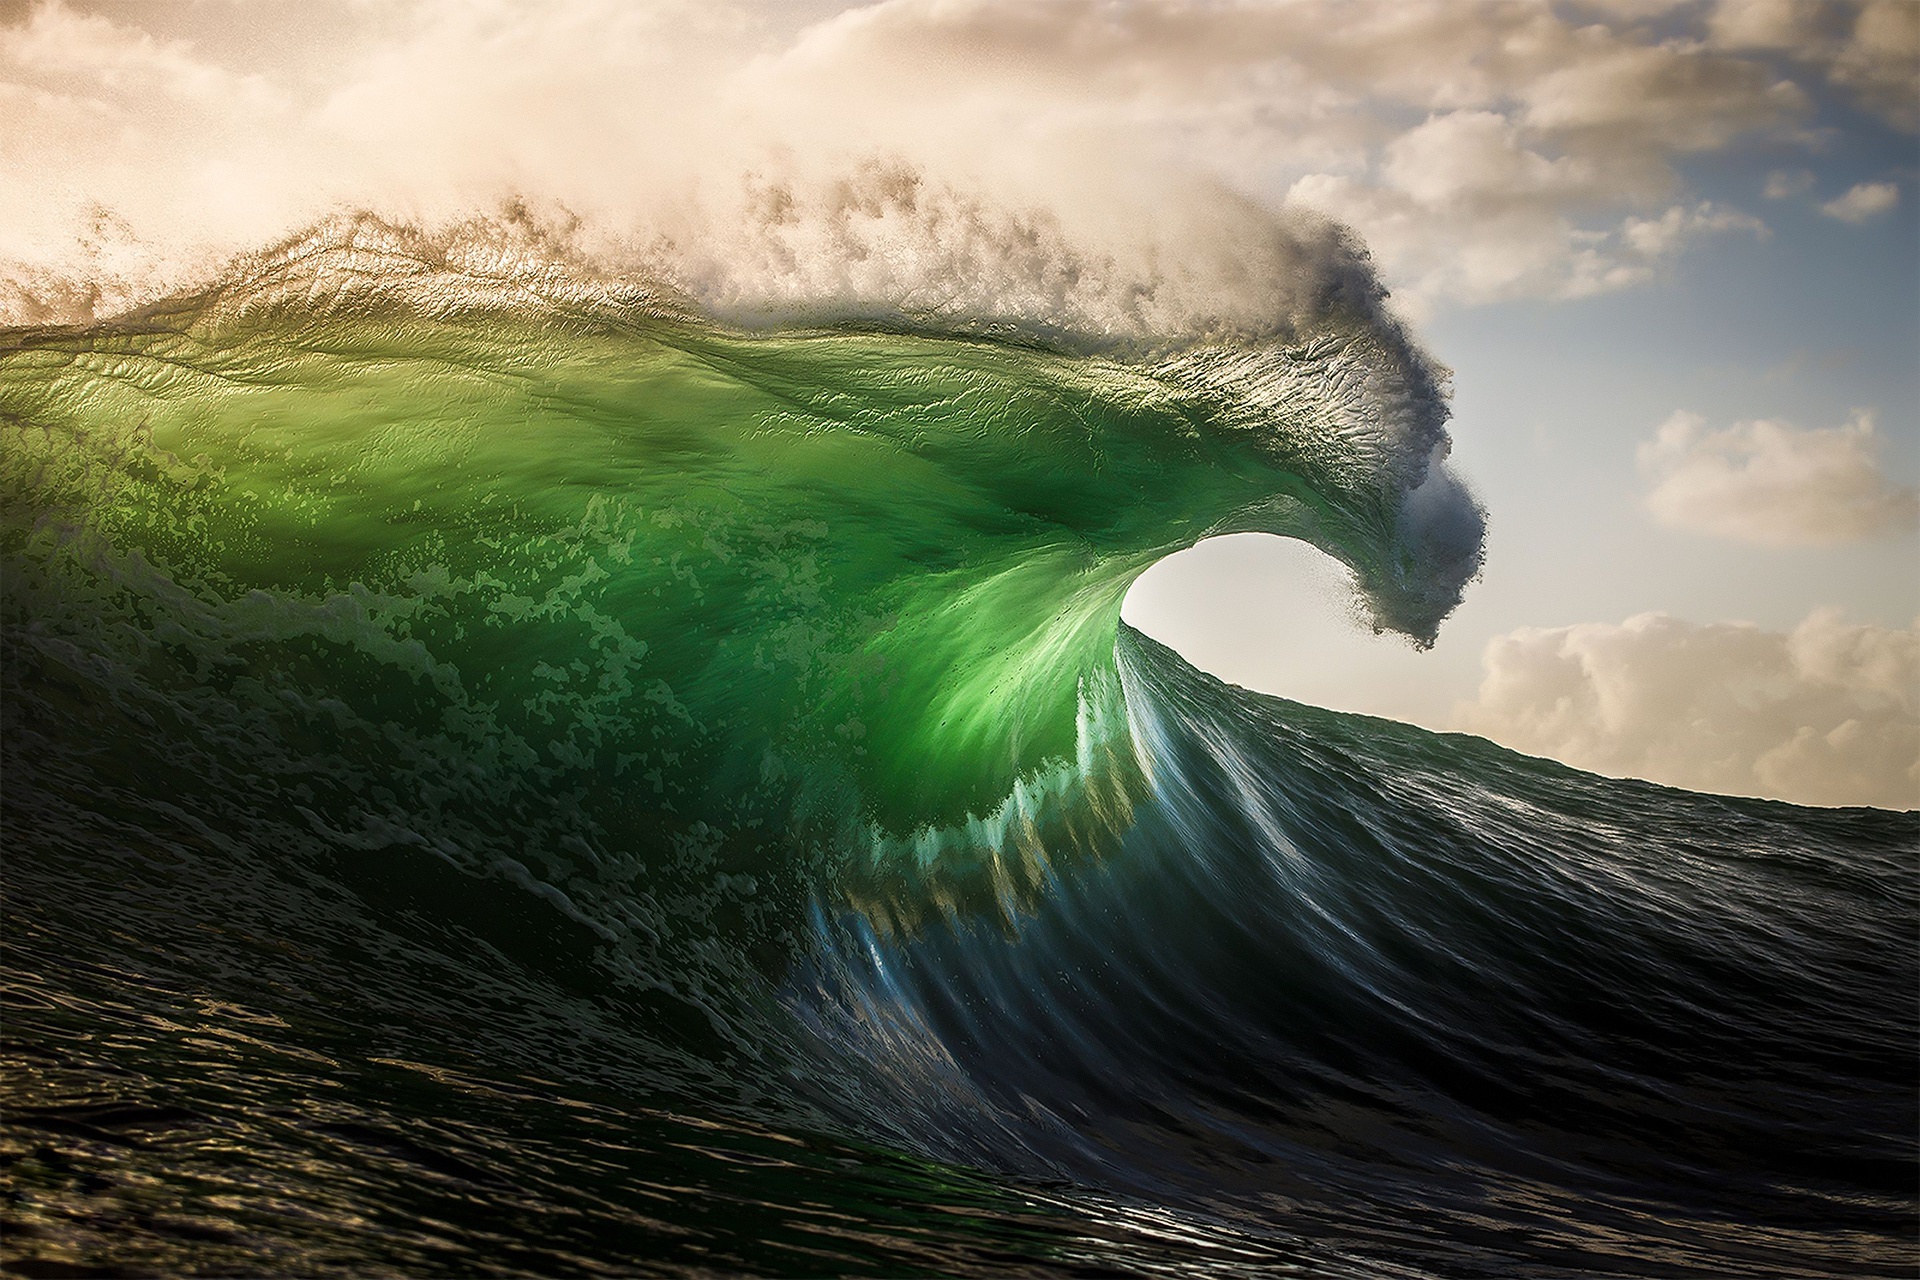 Hình nền sóng: Bạn yêu thích âm thanh sóng vỗ trầm ảnh hưởng tới tâm hồn của bạn? Hãy xem ngay hình nền sóng, với màu xanh biếc, những cánh sóng cuồn cuộn và nhịp đập uyển chuyển. Điều này sẽ giúp bạn trang bị cho mình năng lượng để tự tin bước vào một ngày mới.